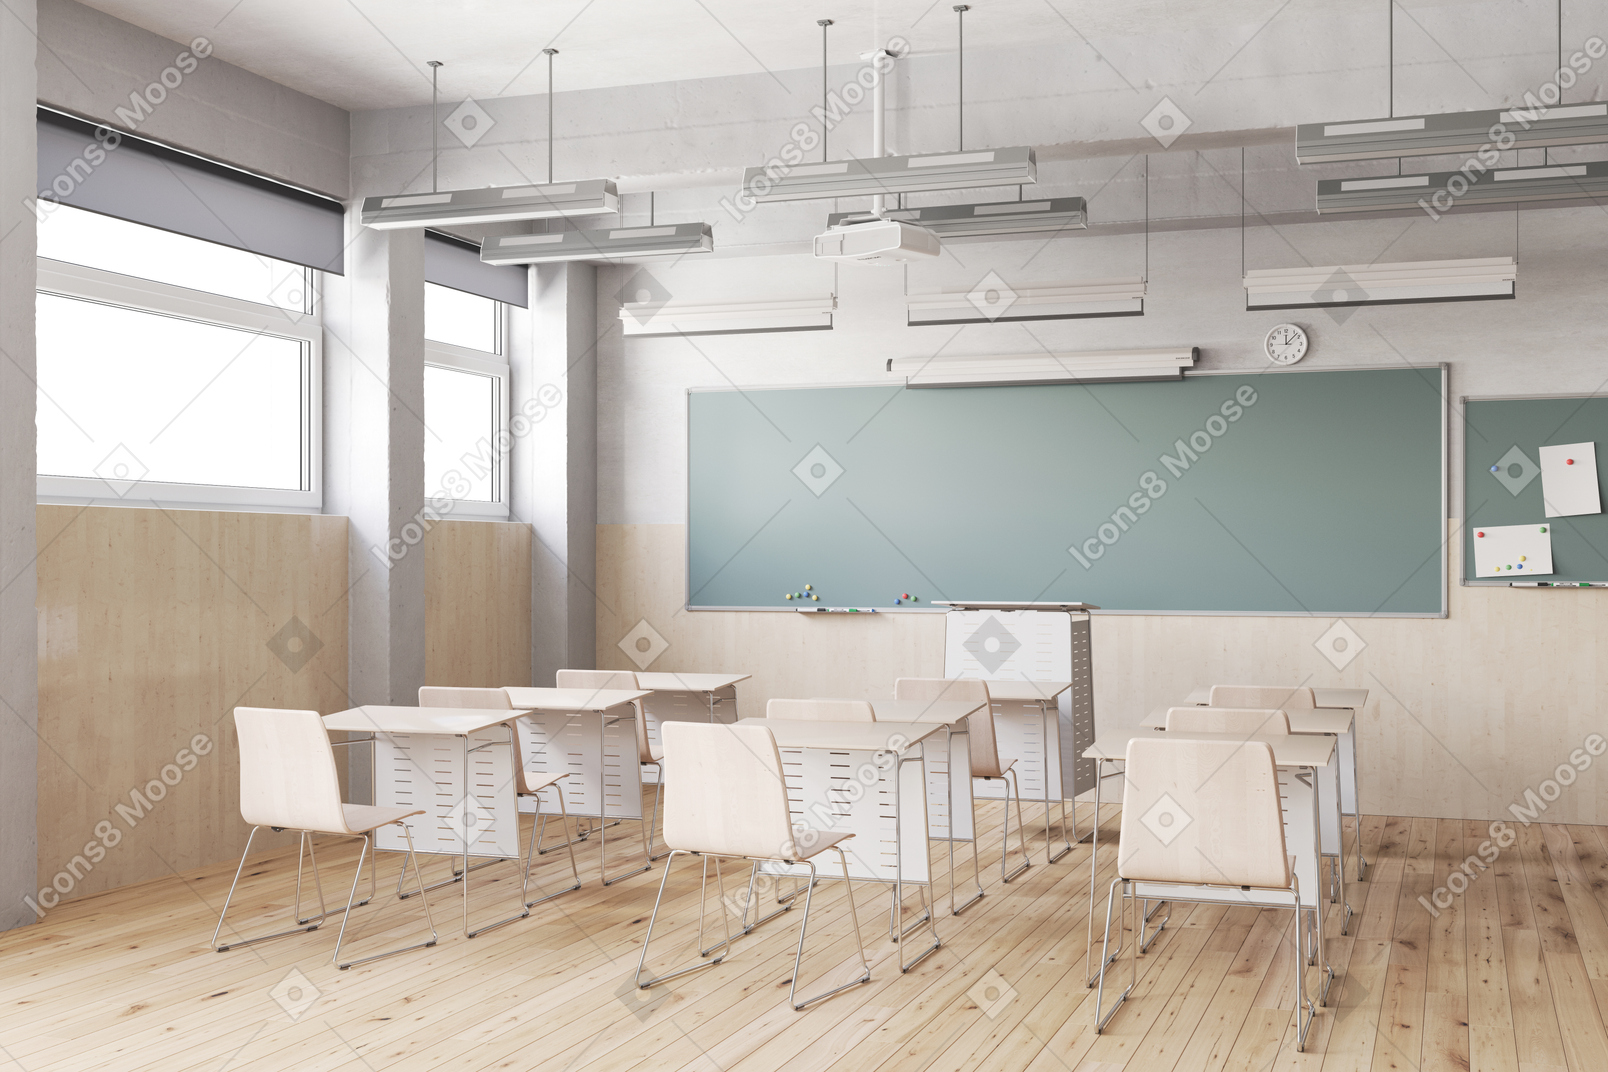 Klassenzimmer mit tischen, stühlen und tafel